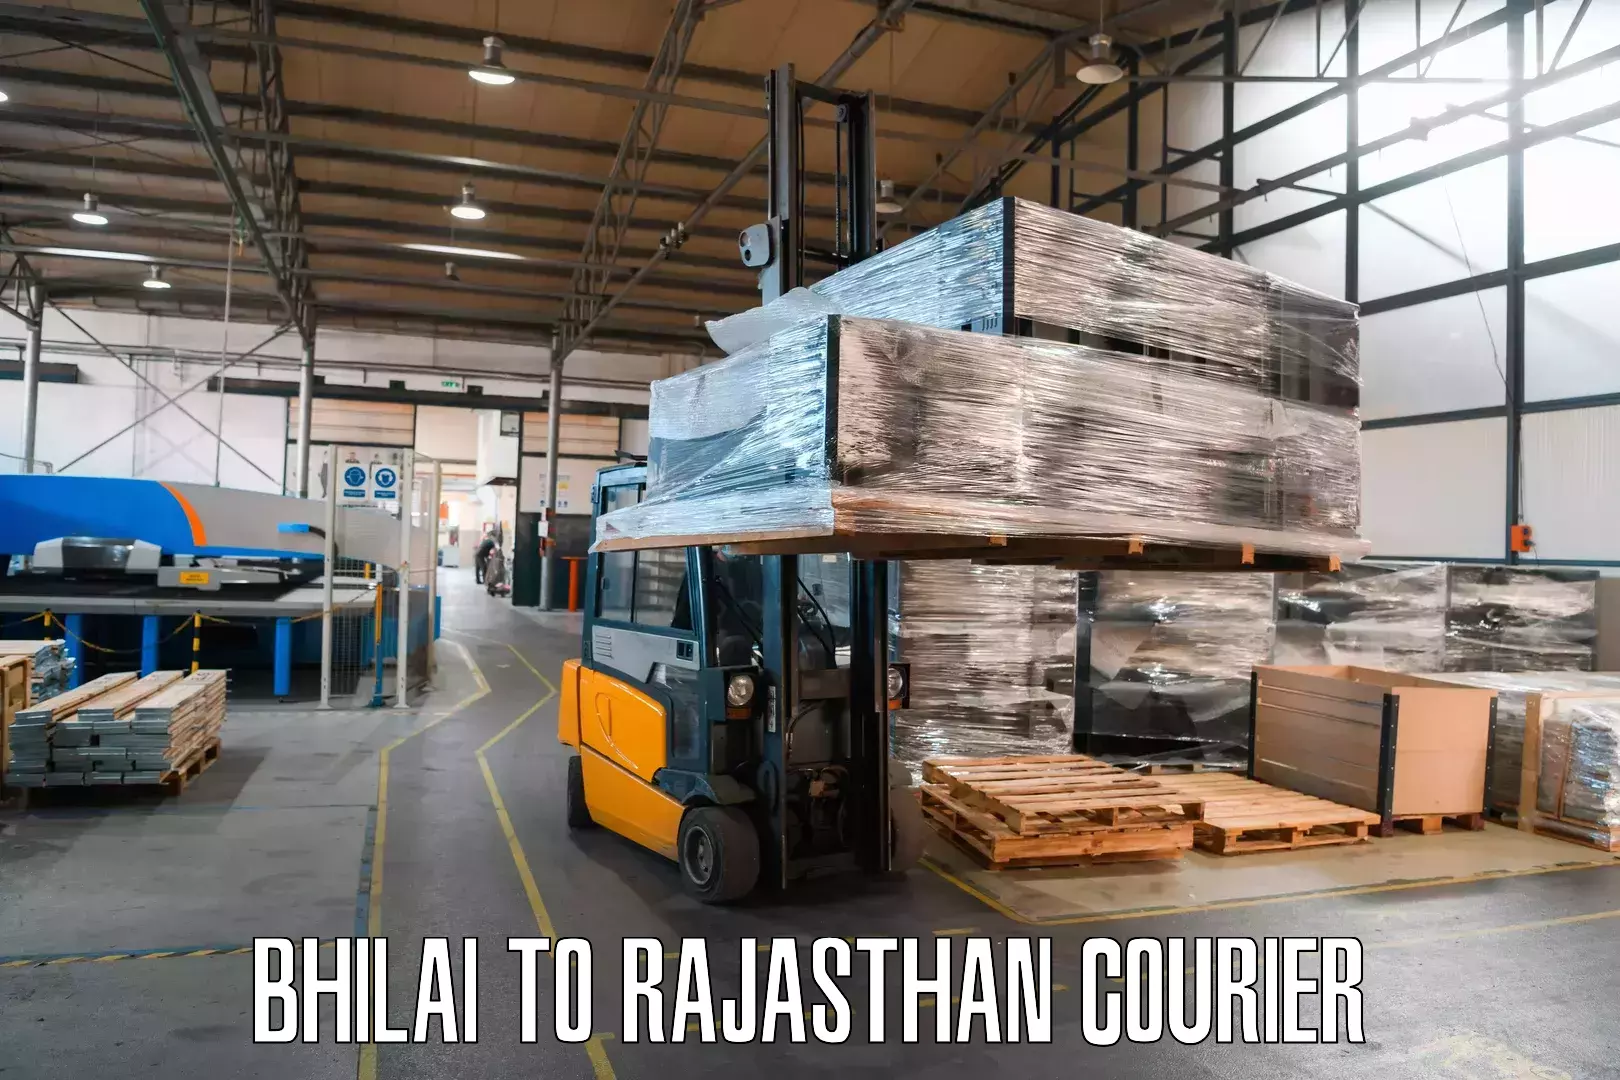 Digital courier platforms Bhilai to Chaumahla